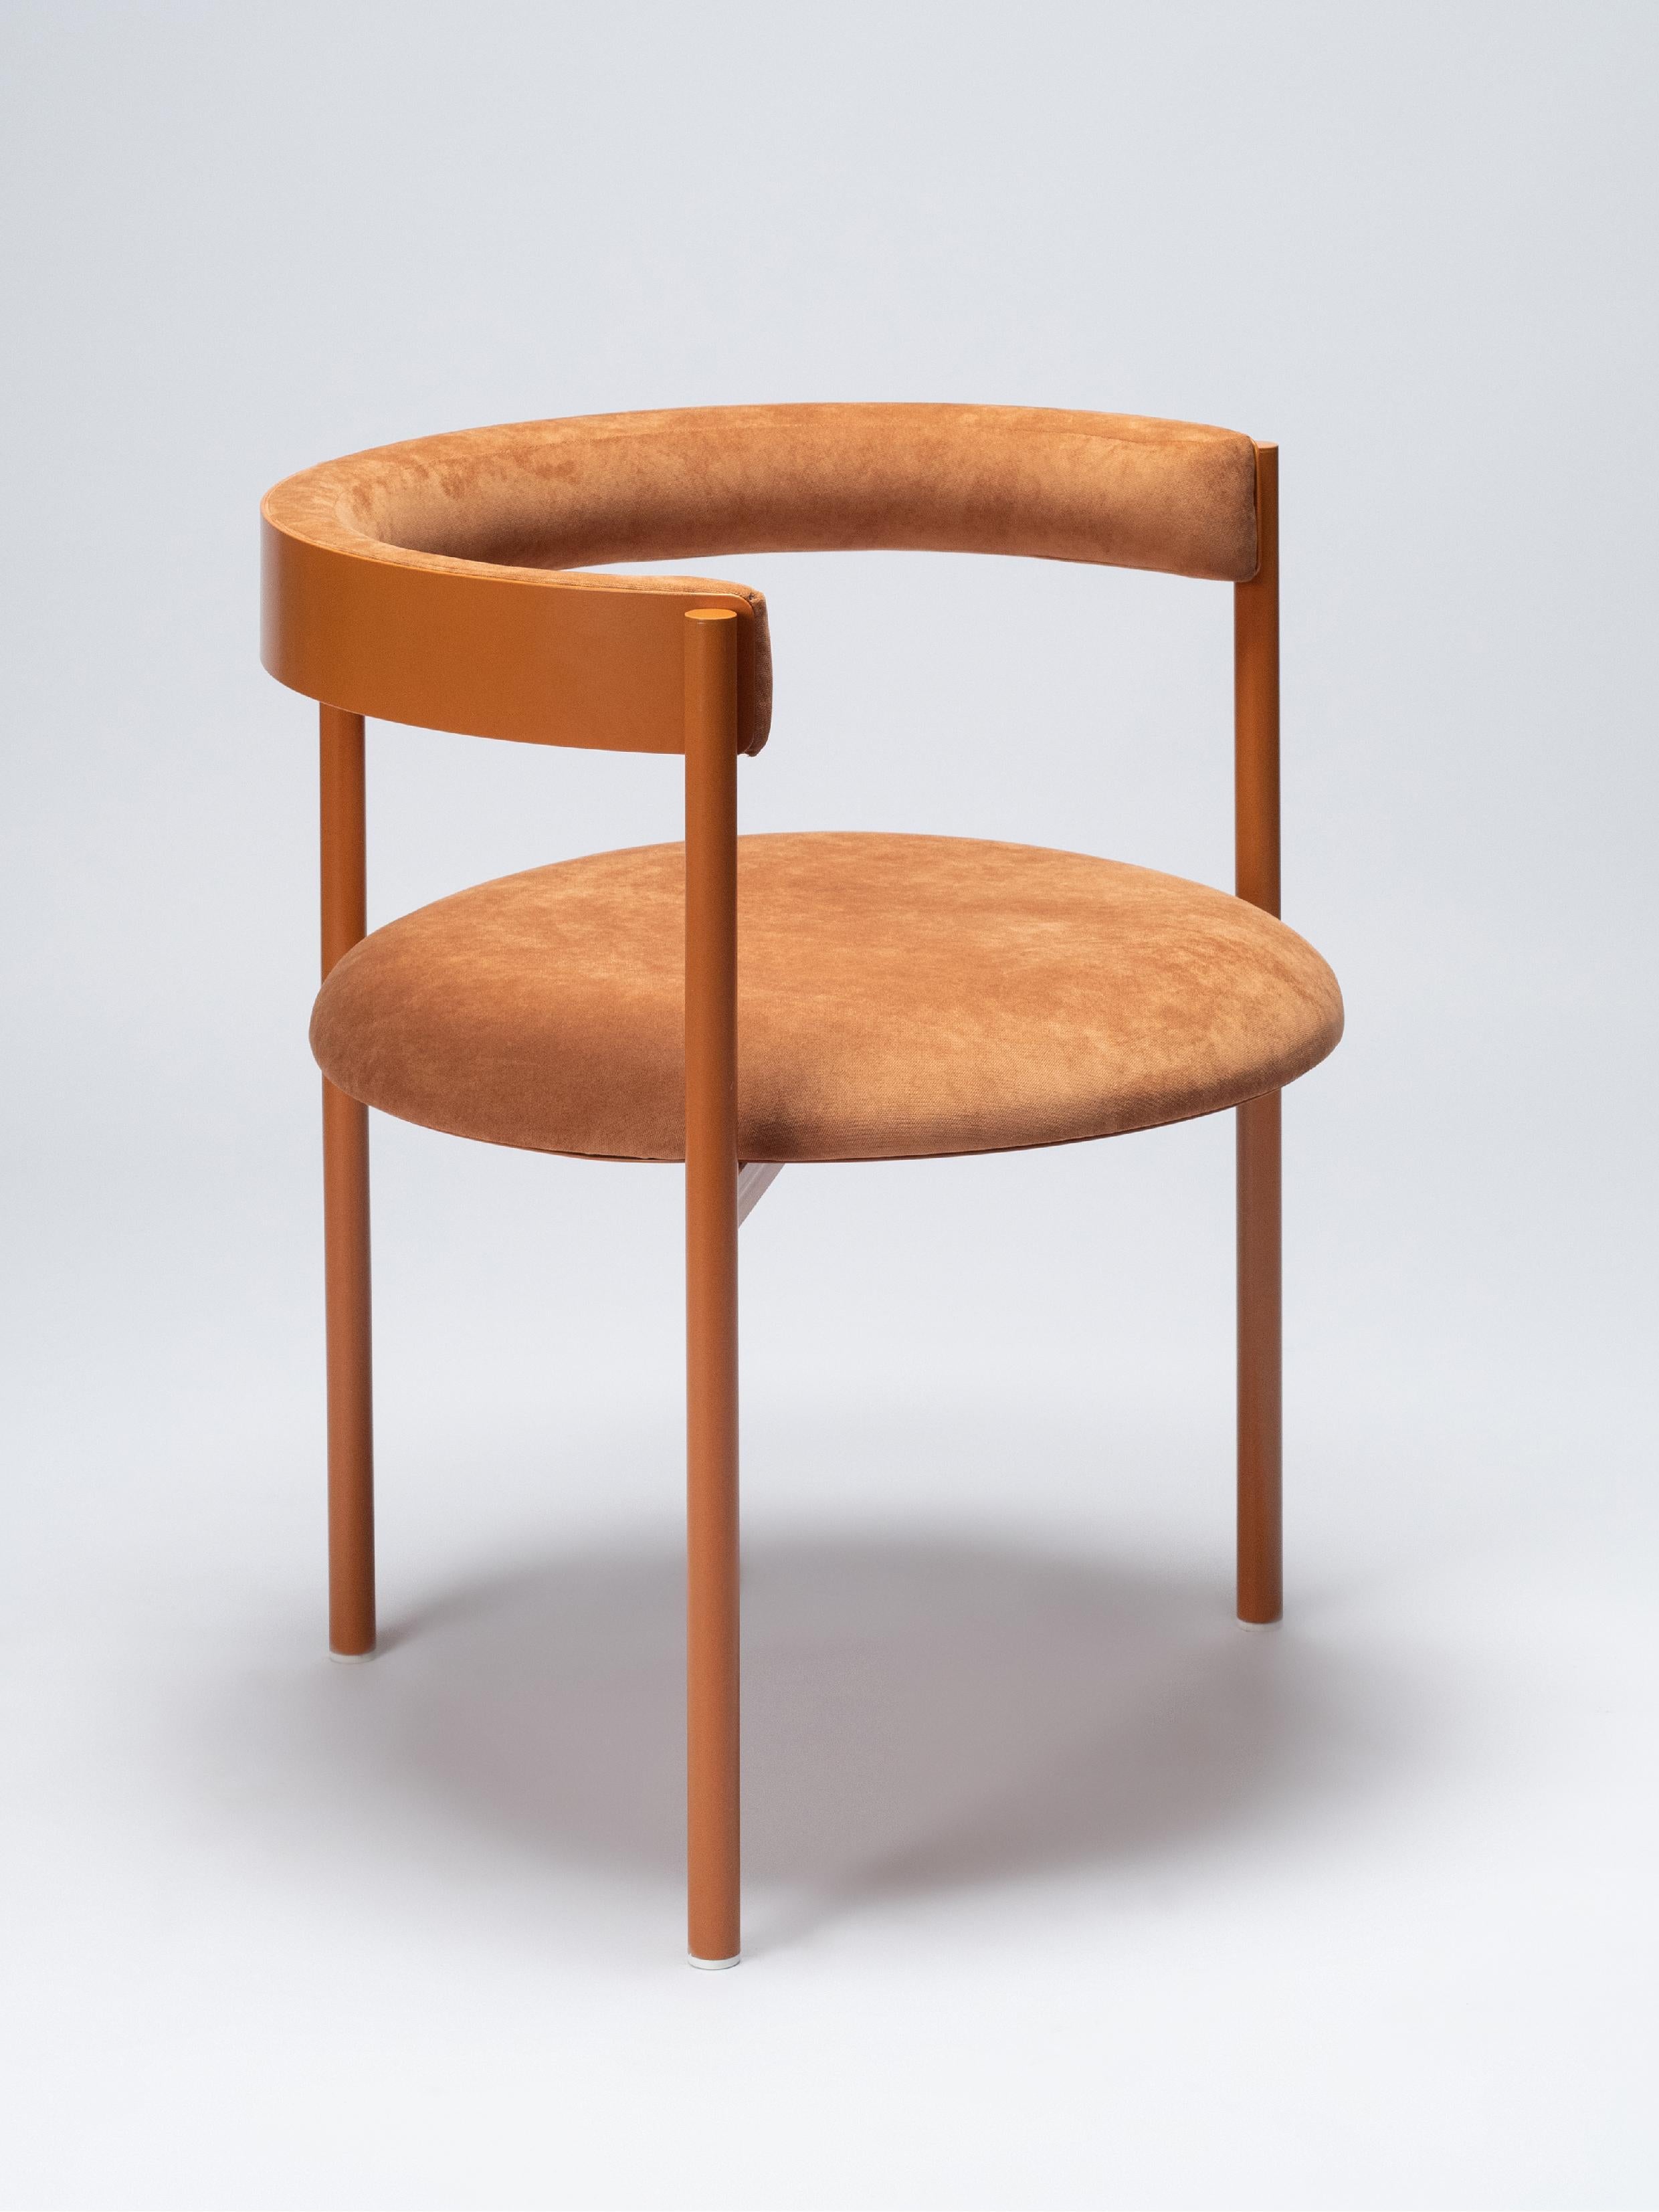 Elegante et confortable, la chaise Aro est construite avec précision et des détails qui font la différence. 

Fabriqué en tubes d'acier ronds recouverts de poudre et rembourrage en velours. Ils conviennent aux environnements intérieurs et